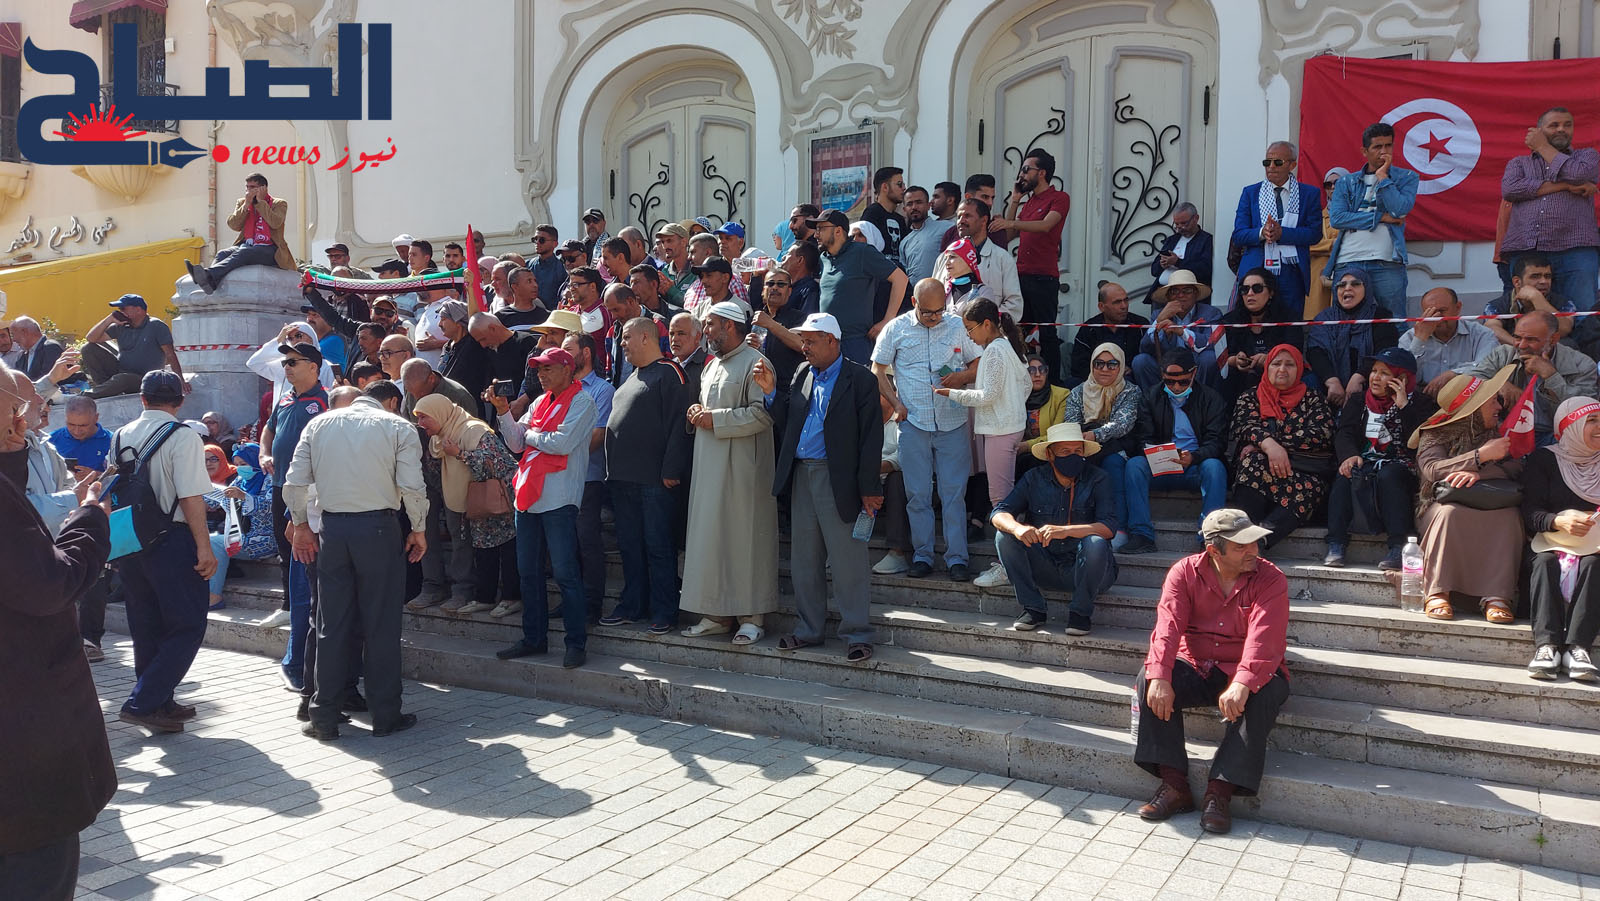 بداية تجمع أنصار "مواطنون ضد الانقلاب" و"جبهة الخلاص الوطني" أمام المسرح البلدي بالعاصمة